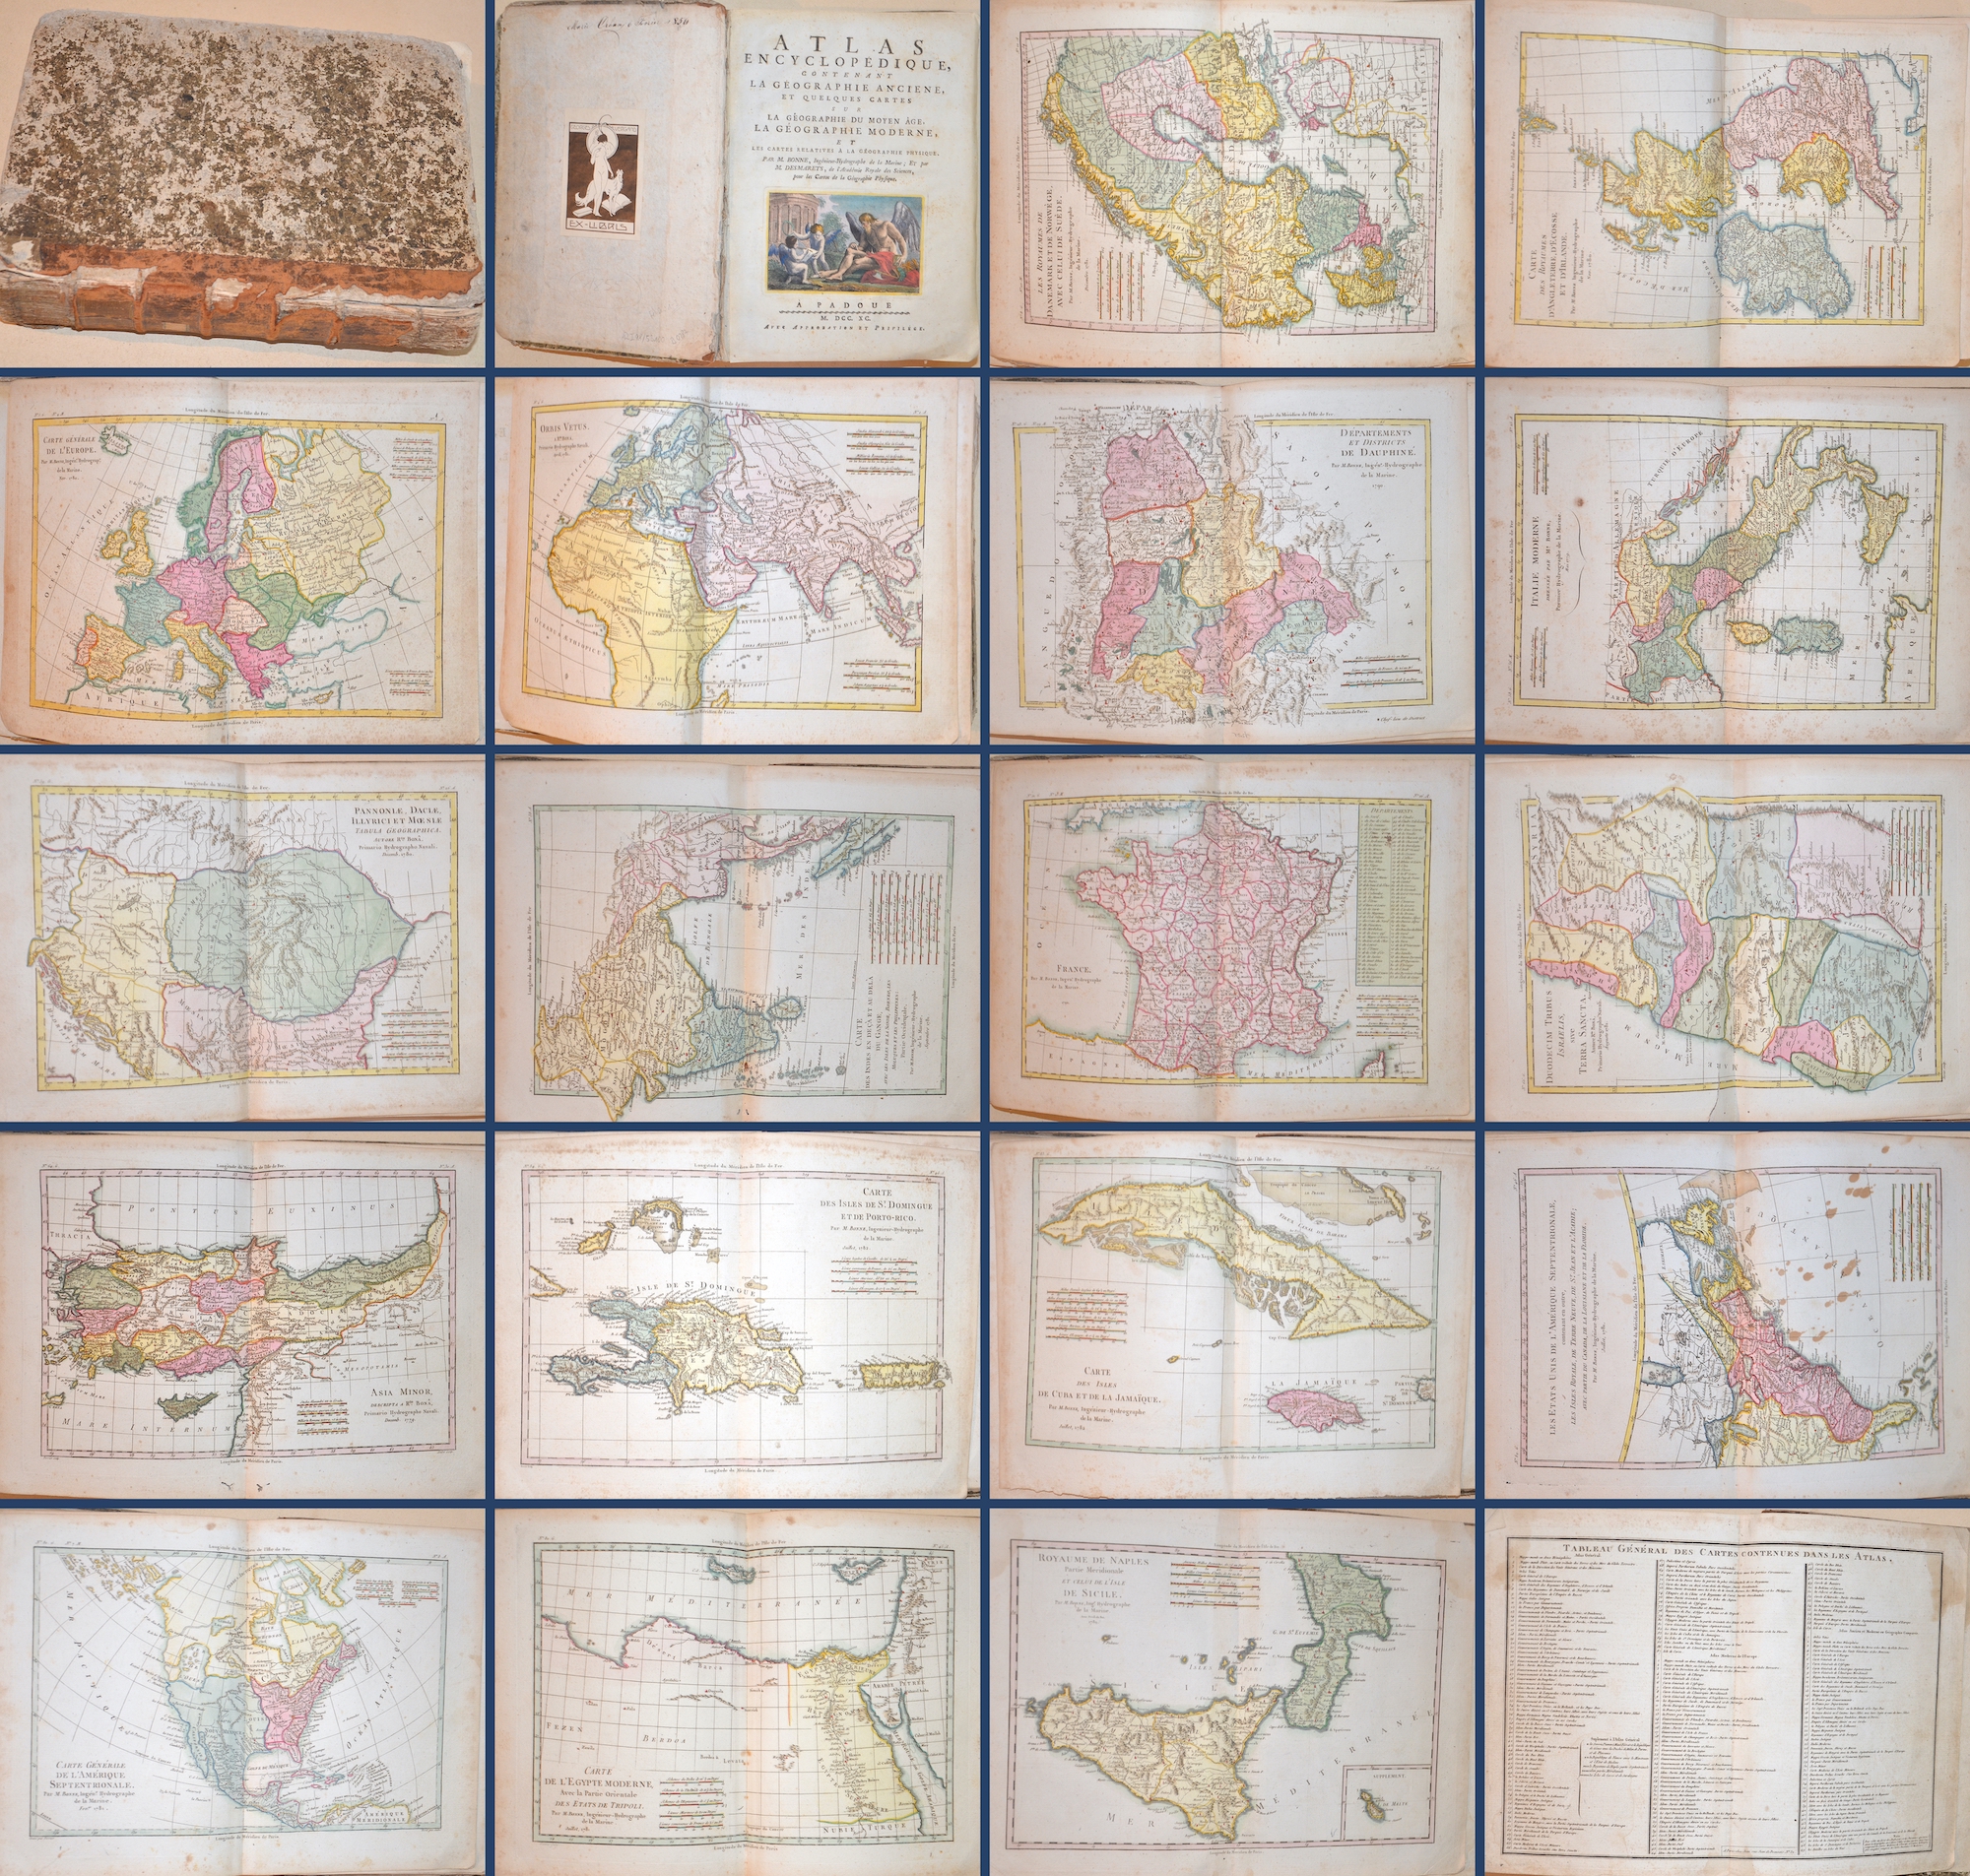 Bonne Rigobert Atlas Encyclopedique, Contenant la Geographie anciene, et quelques cartes sur la Geographie du moyen age, la Geographie Moderne, et..